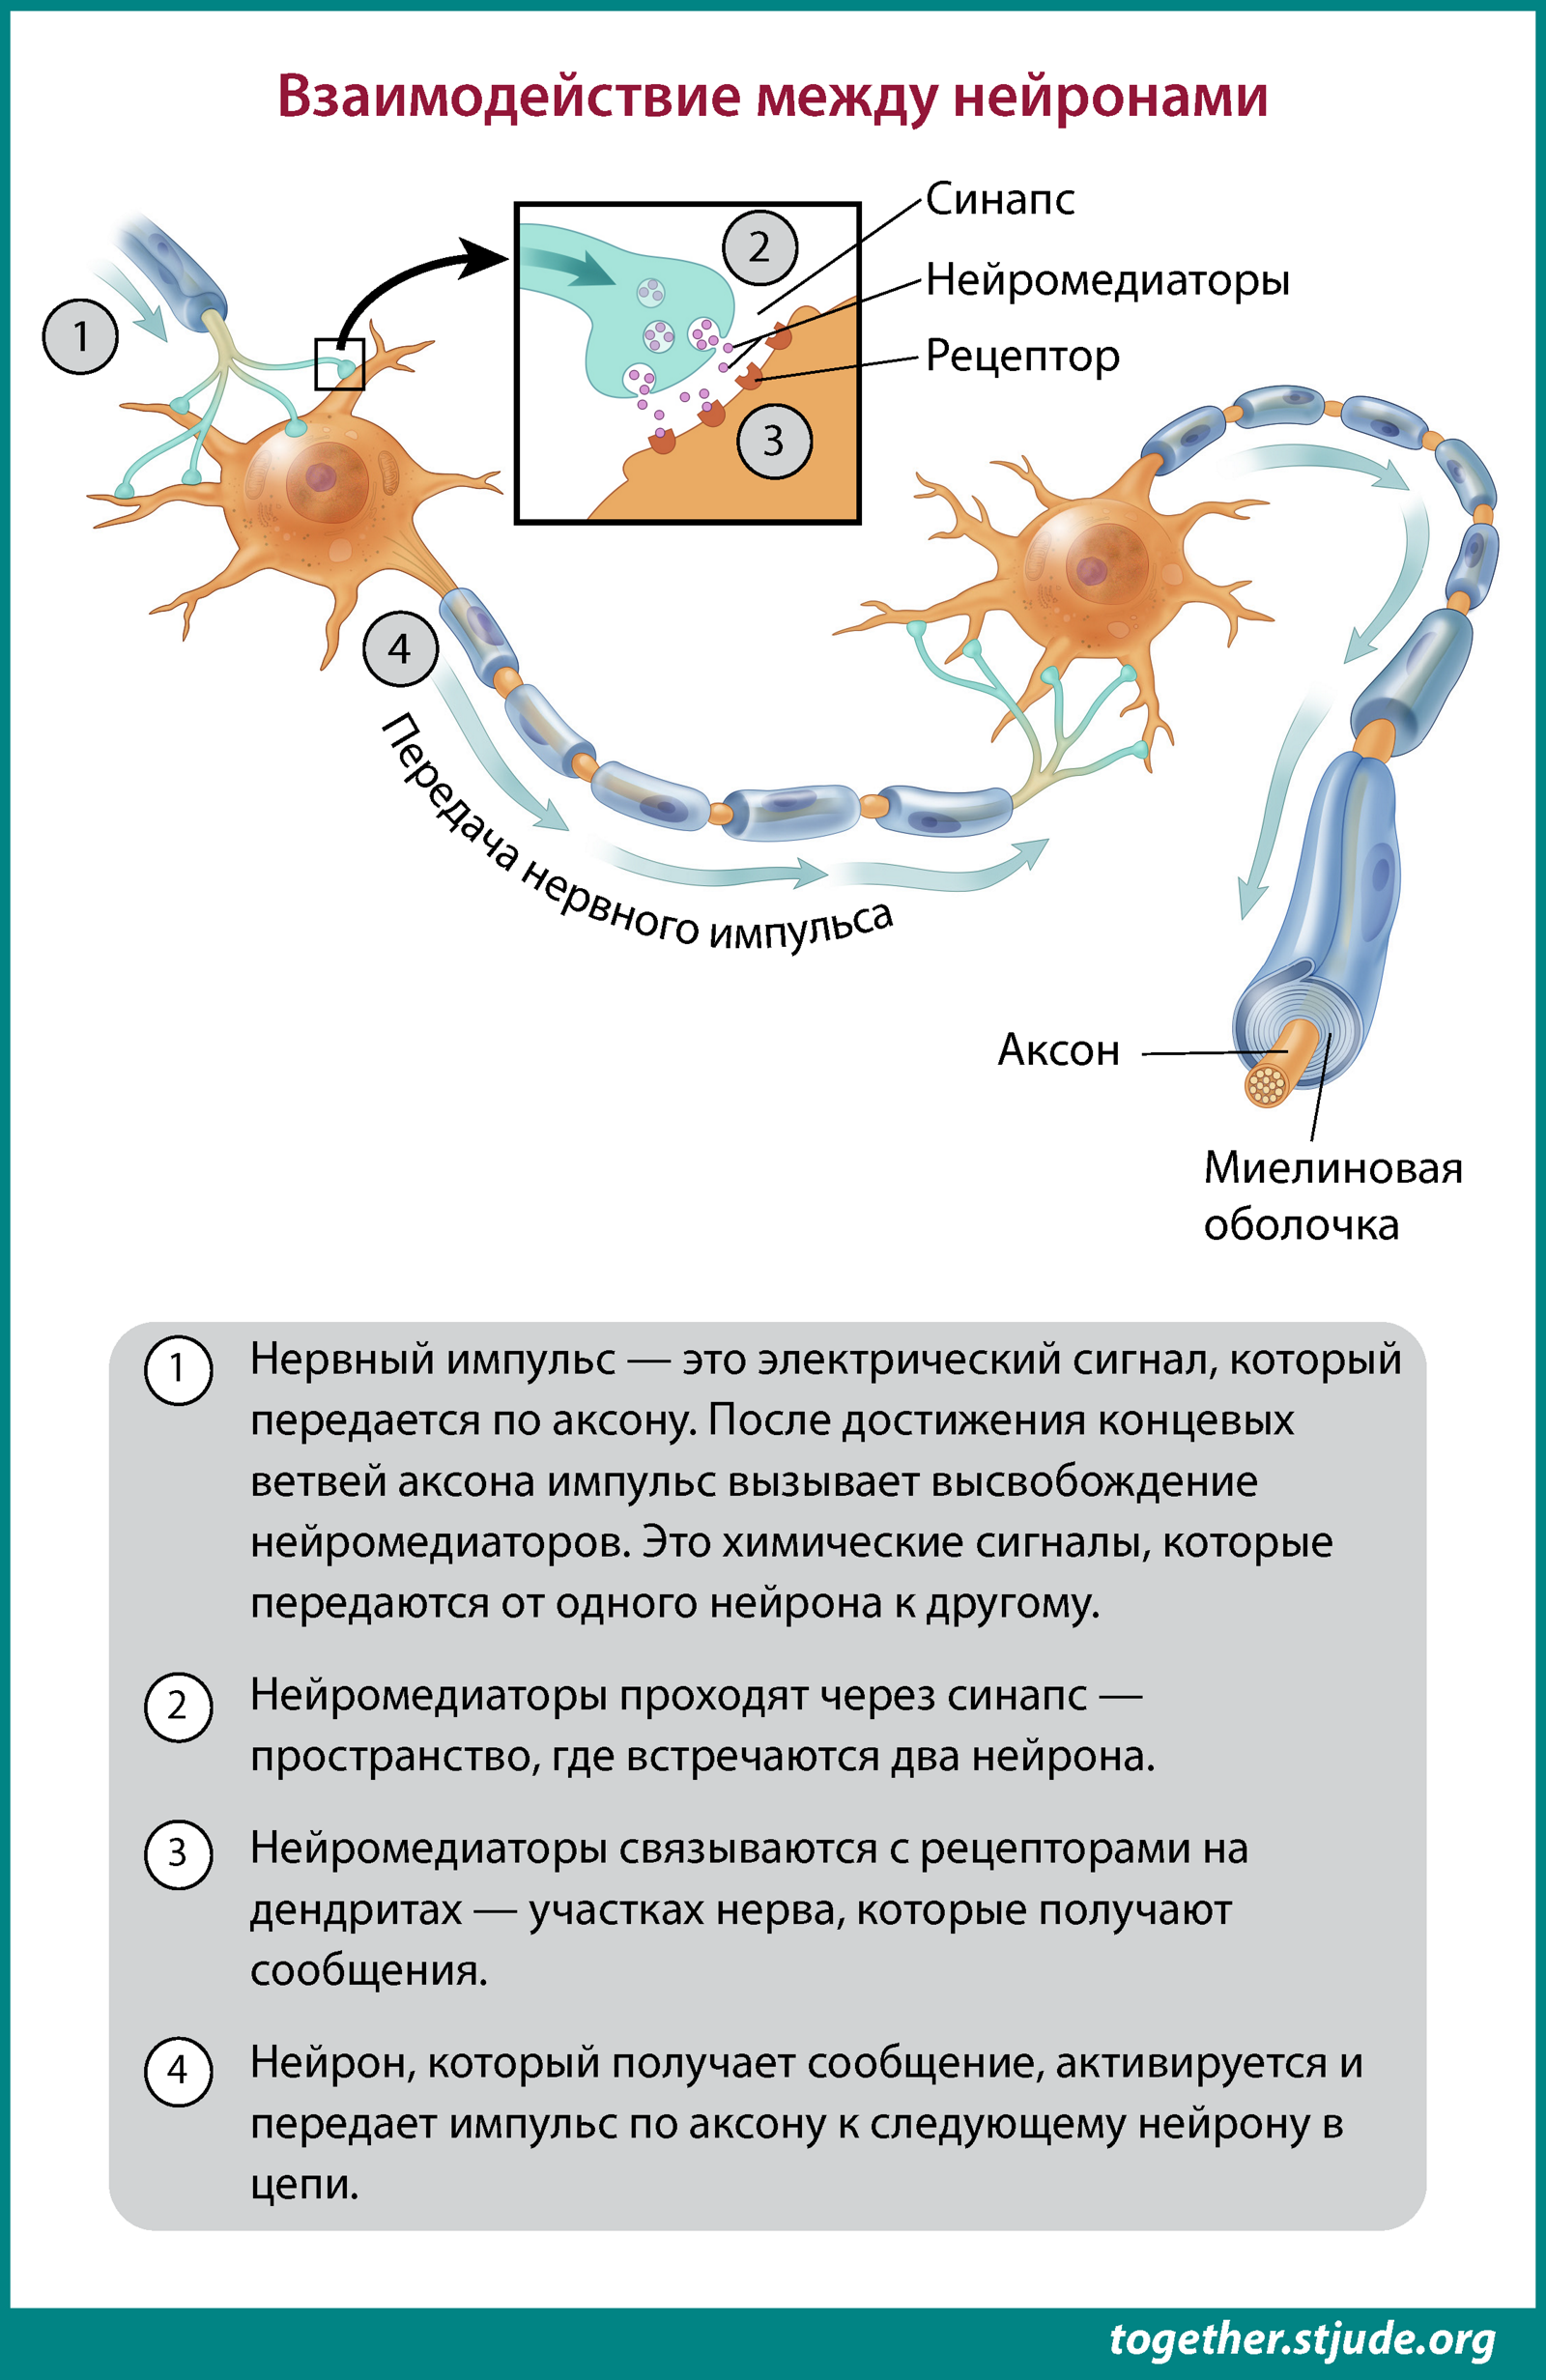 Нейроны обмениваются информацией друг с другом с помощью нервных импульсов — электрических сигналов, передающихся от одного нейрона к другому.